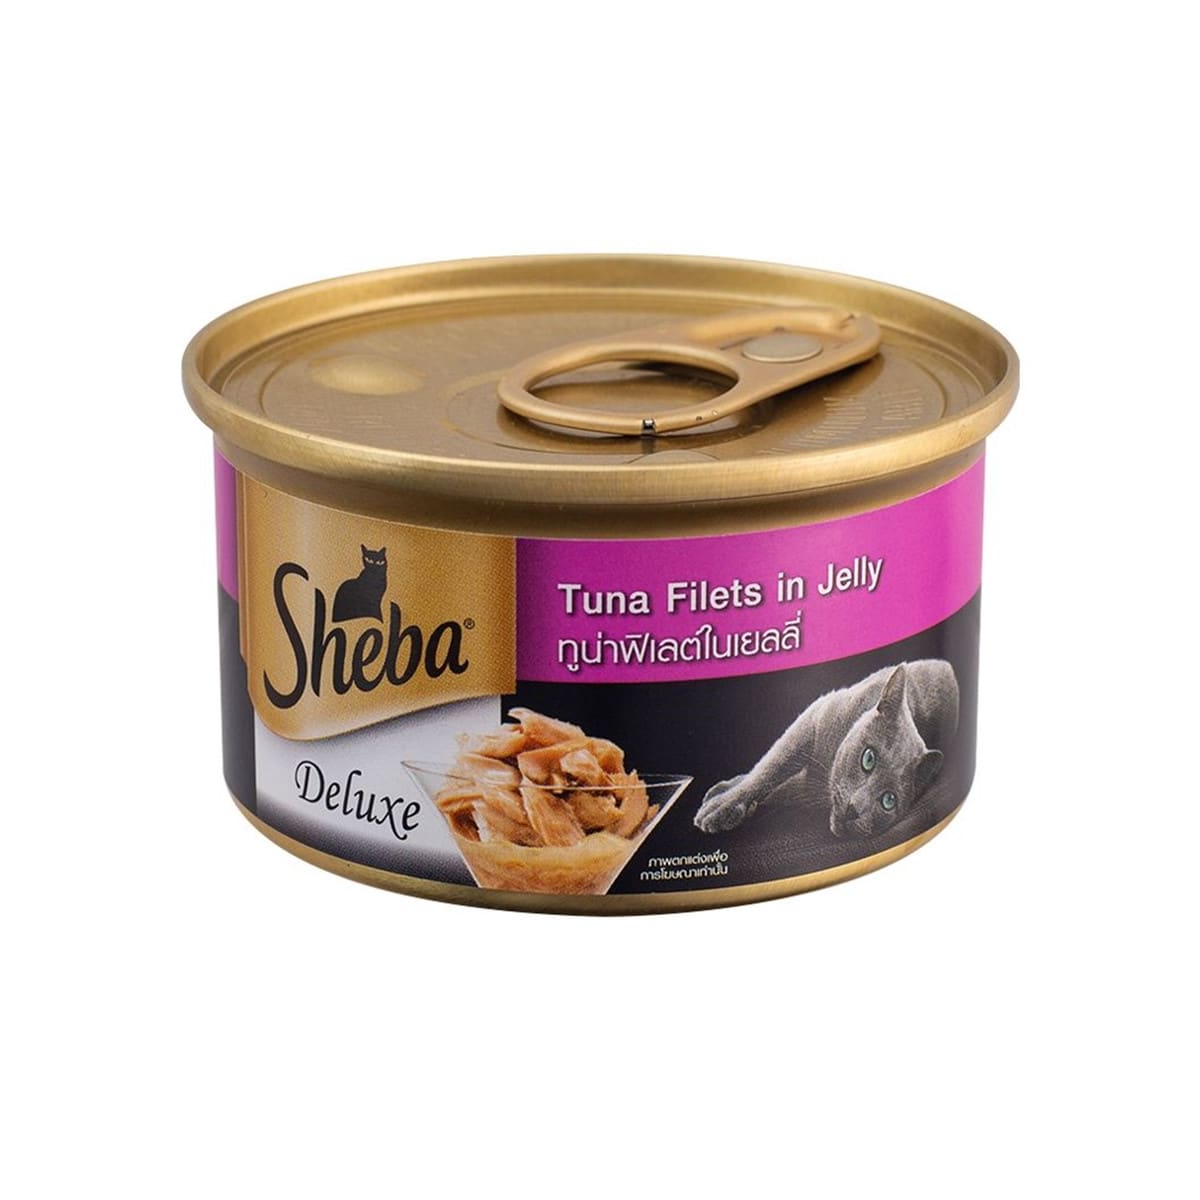 Sheba Deluxe อาหารเปียก สำหรับแมว รสทูน่าเนื้อขาวในเยลลี่ 85 g_1